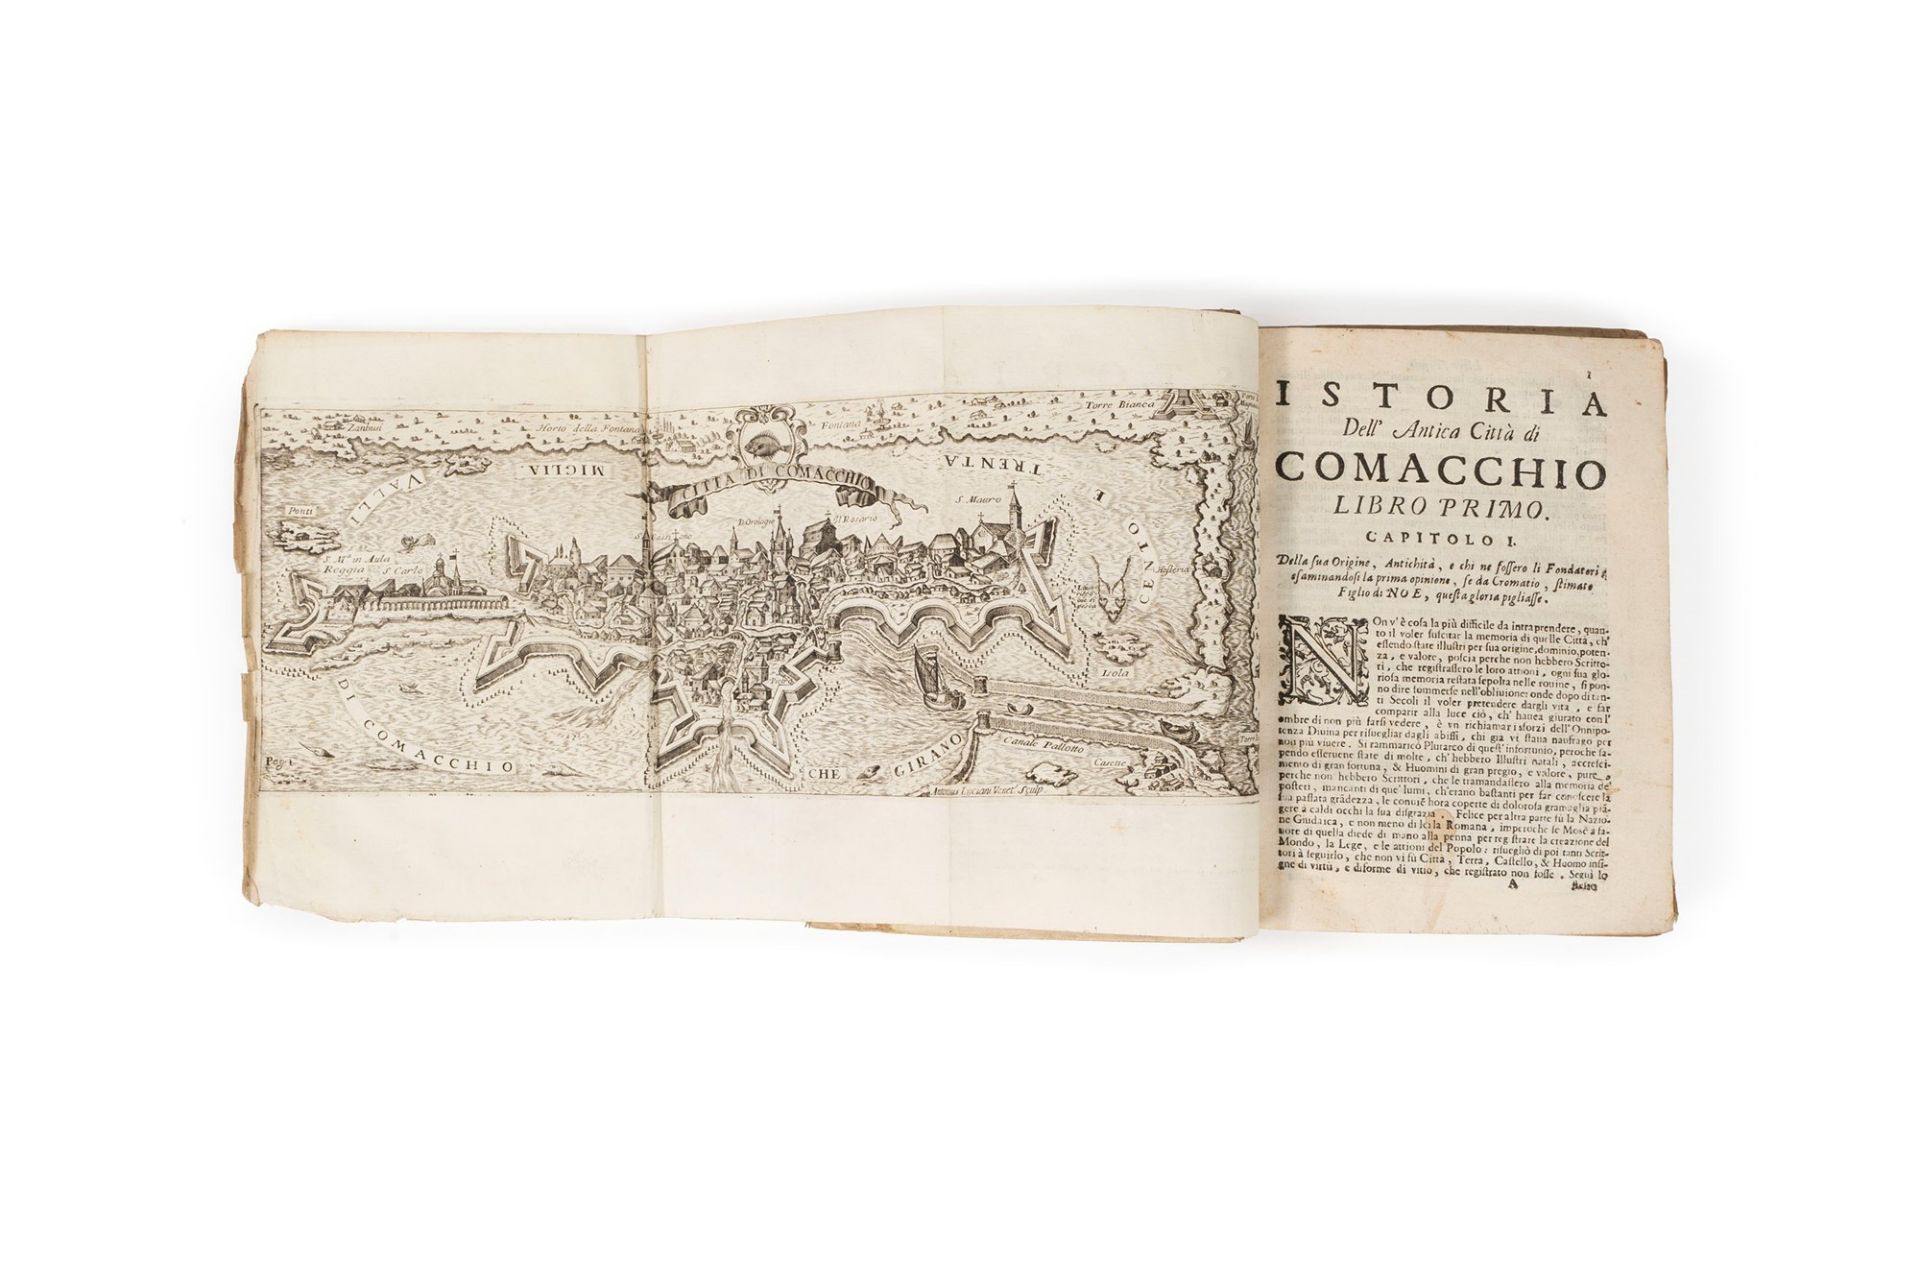 Comacchio - Ferro, Giovanni Francesco - History of the ancient city of Comacchio - Image 2 of 2